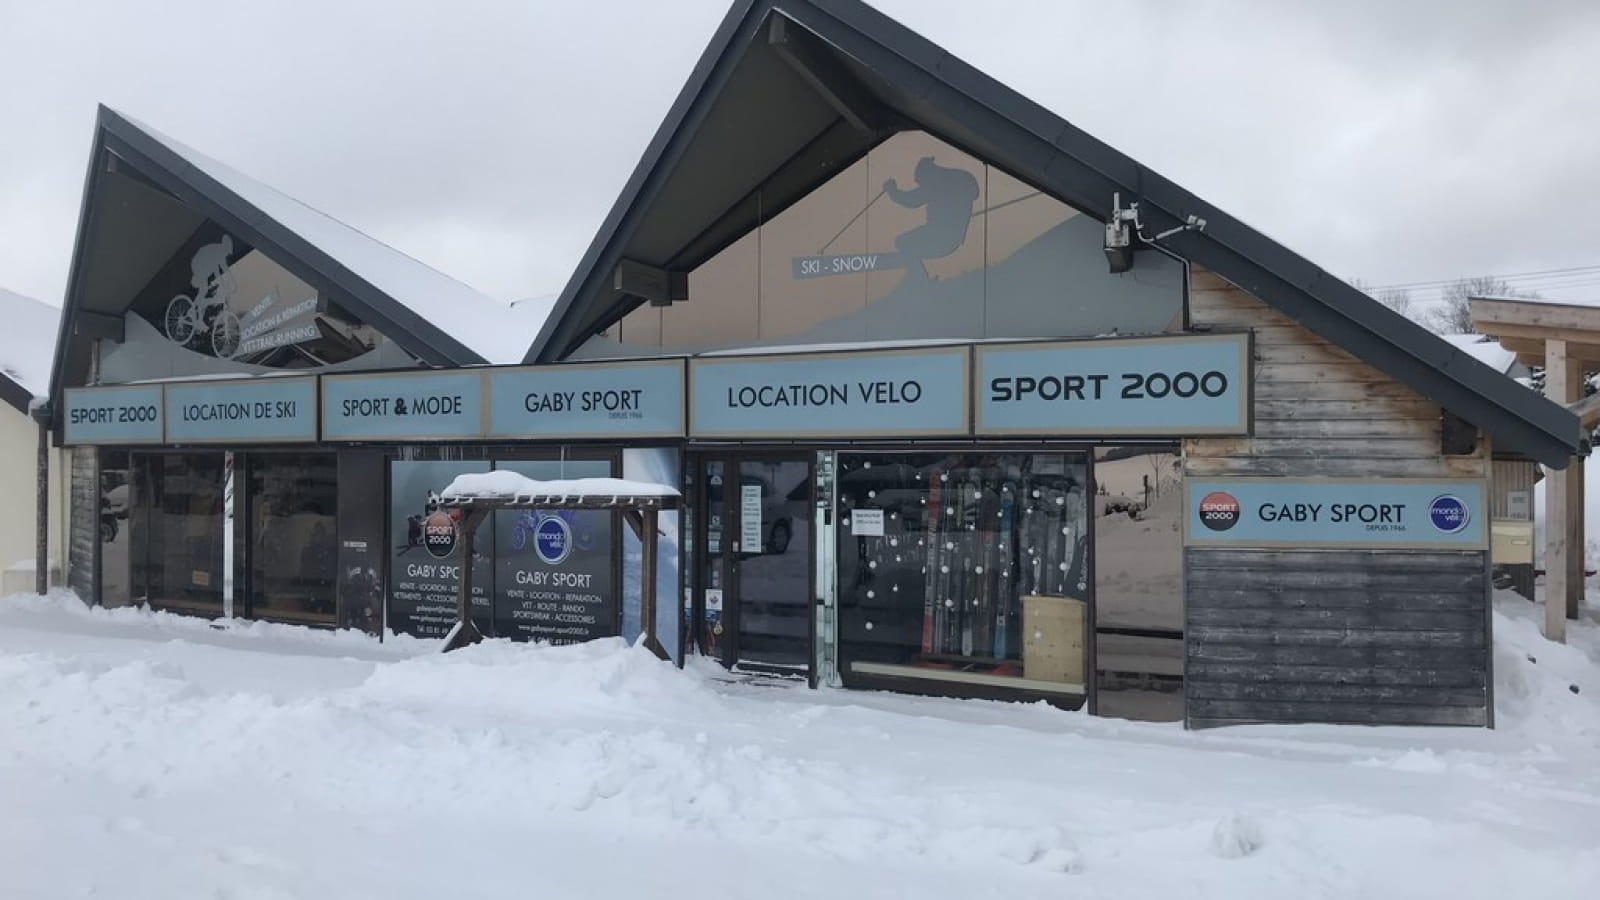 Location de matériel de ski - Gaby Sport - Sport 2000